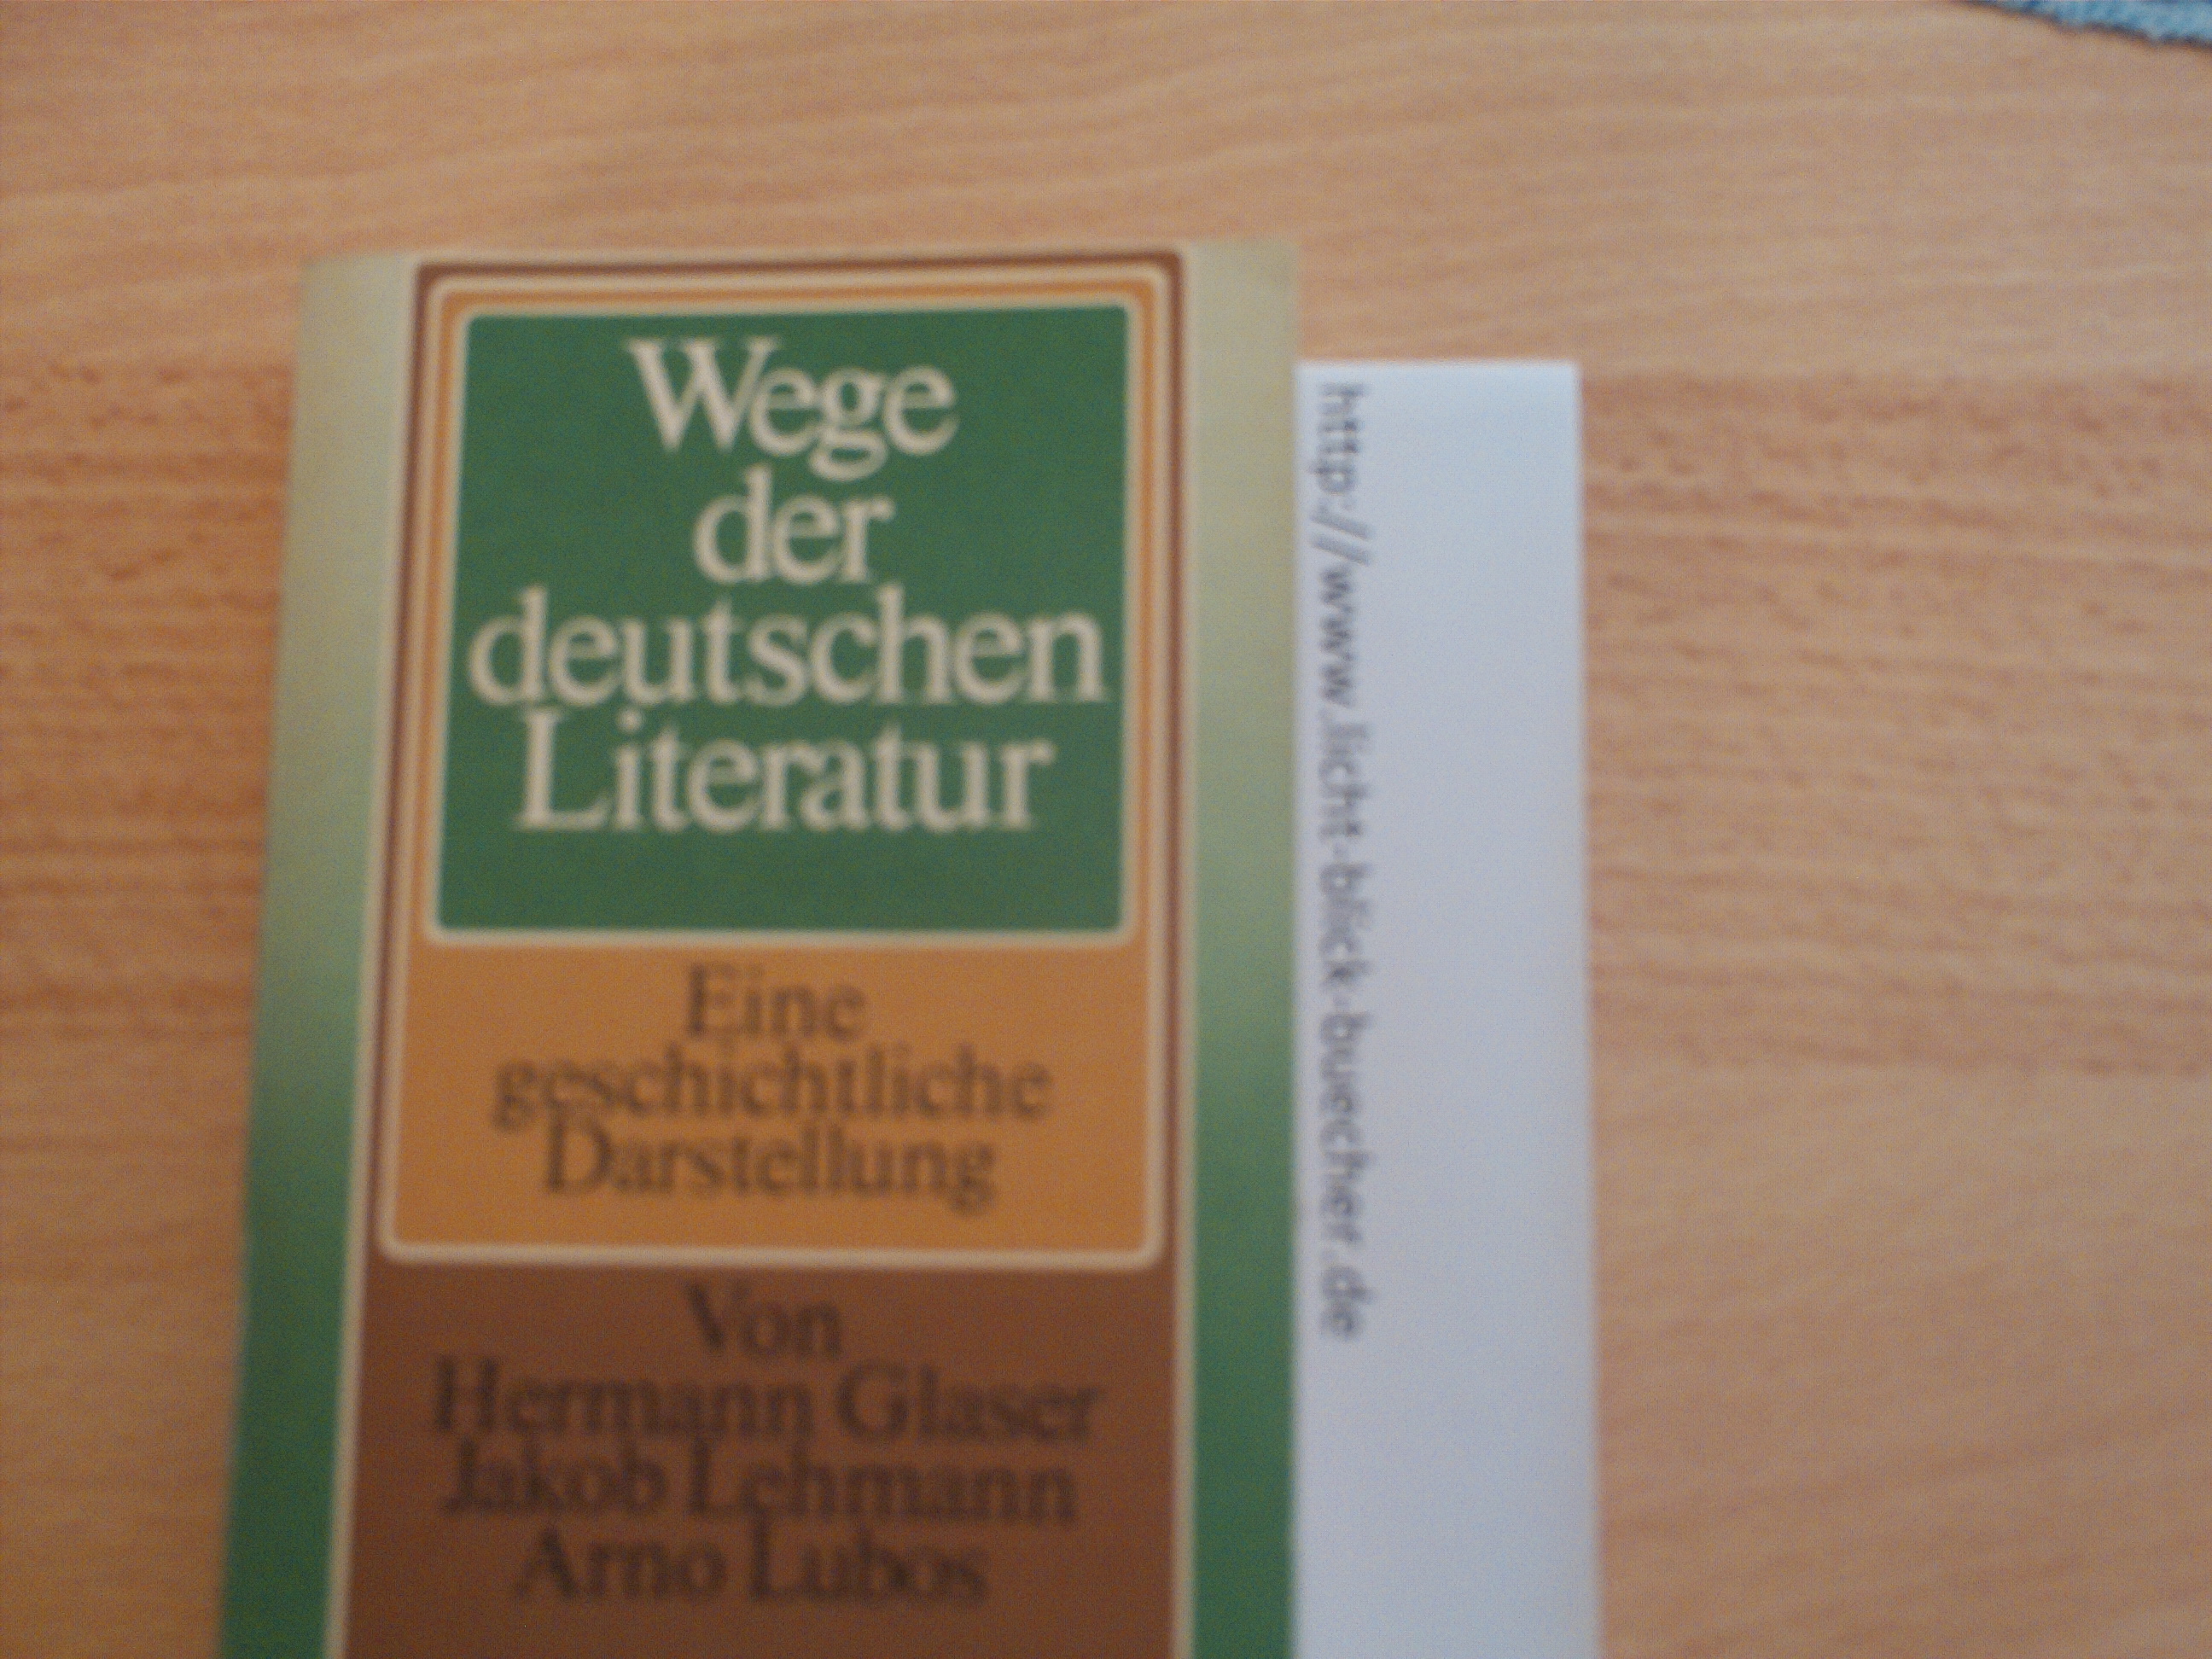 Wege der deutschen Literatur - Eine geschichtliche Darstellung....Lehmann / Glaser / Lubos